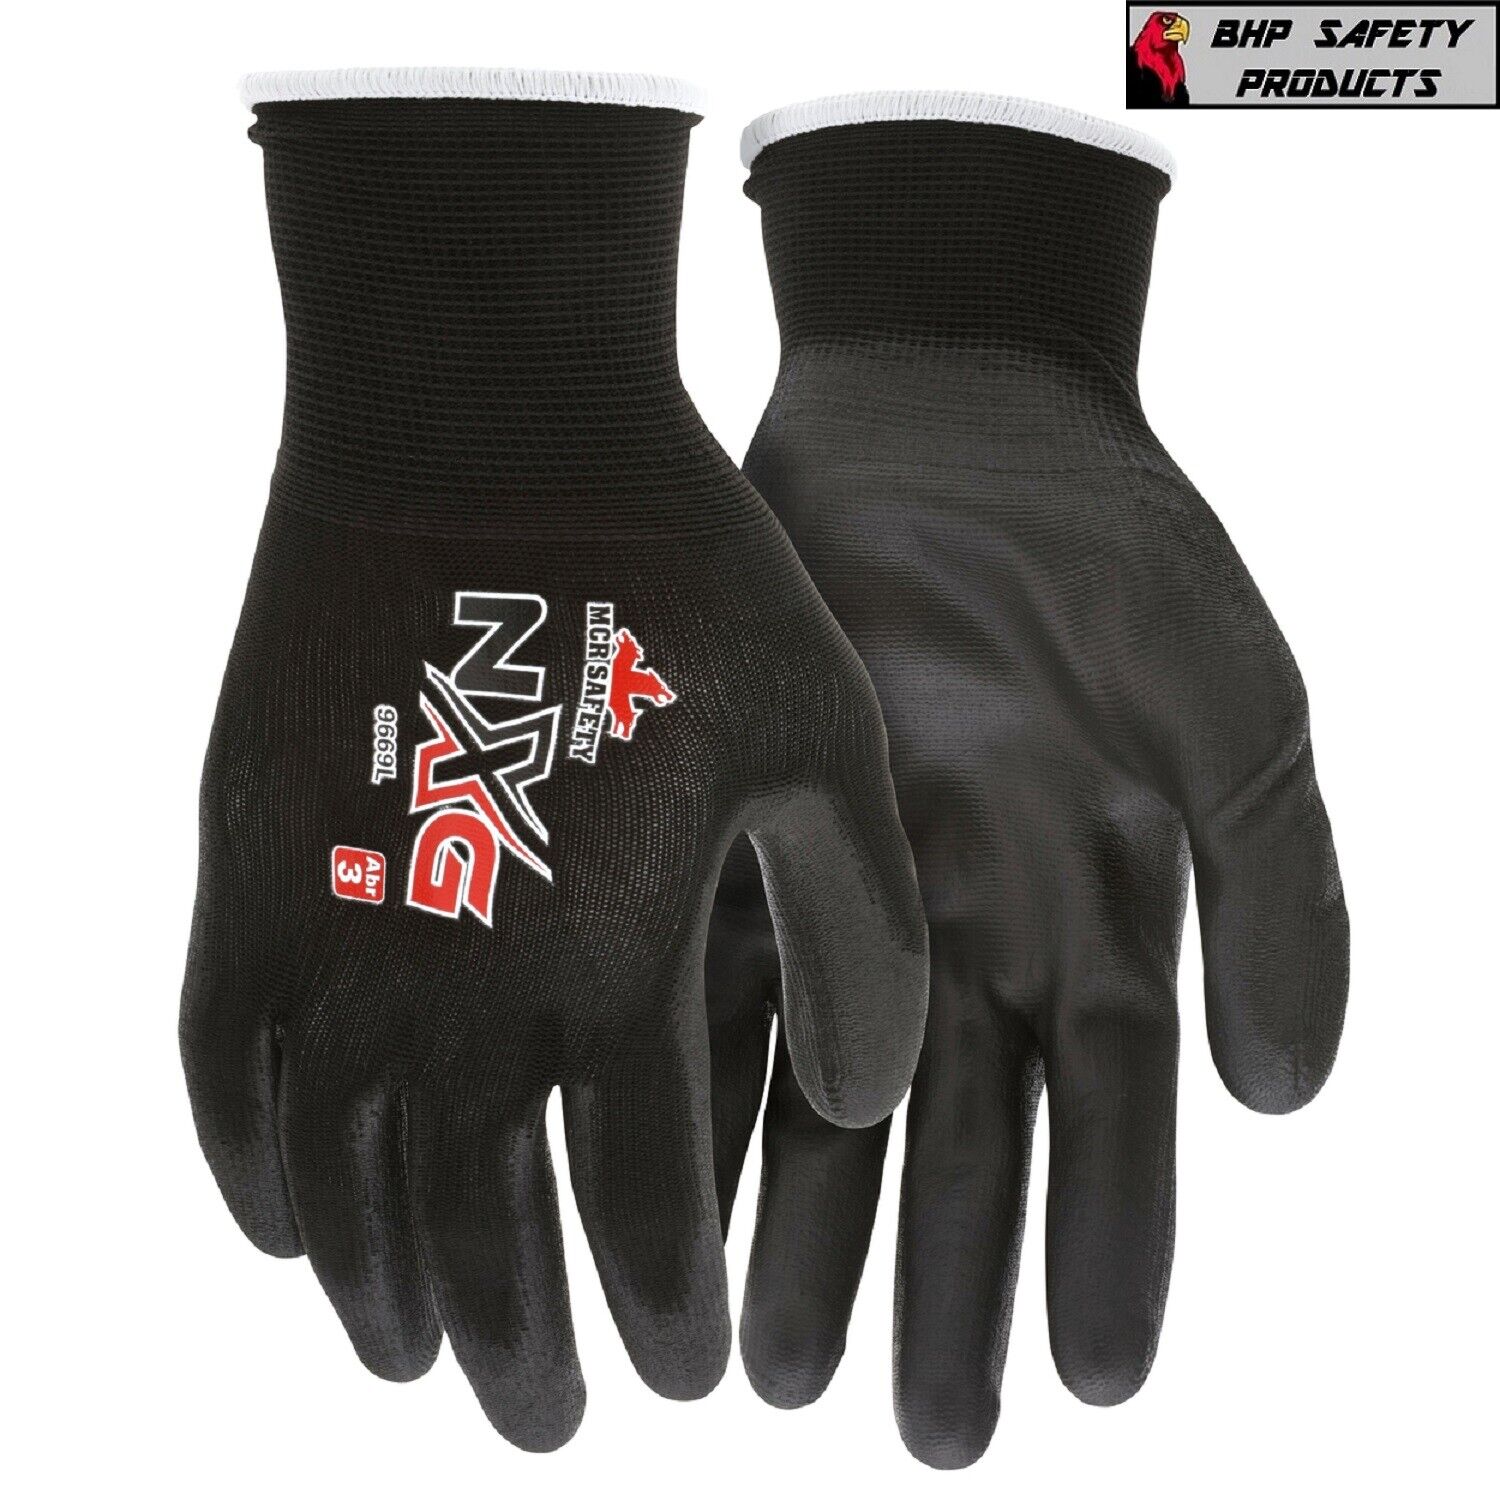 (12 Pairs) MCR Safety Polyurethane Coated Nylon Work Gloves, 13 Gauge Shell